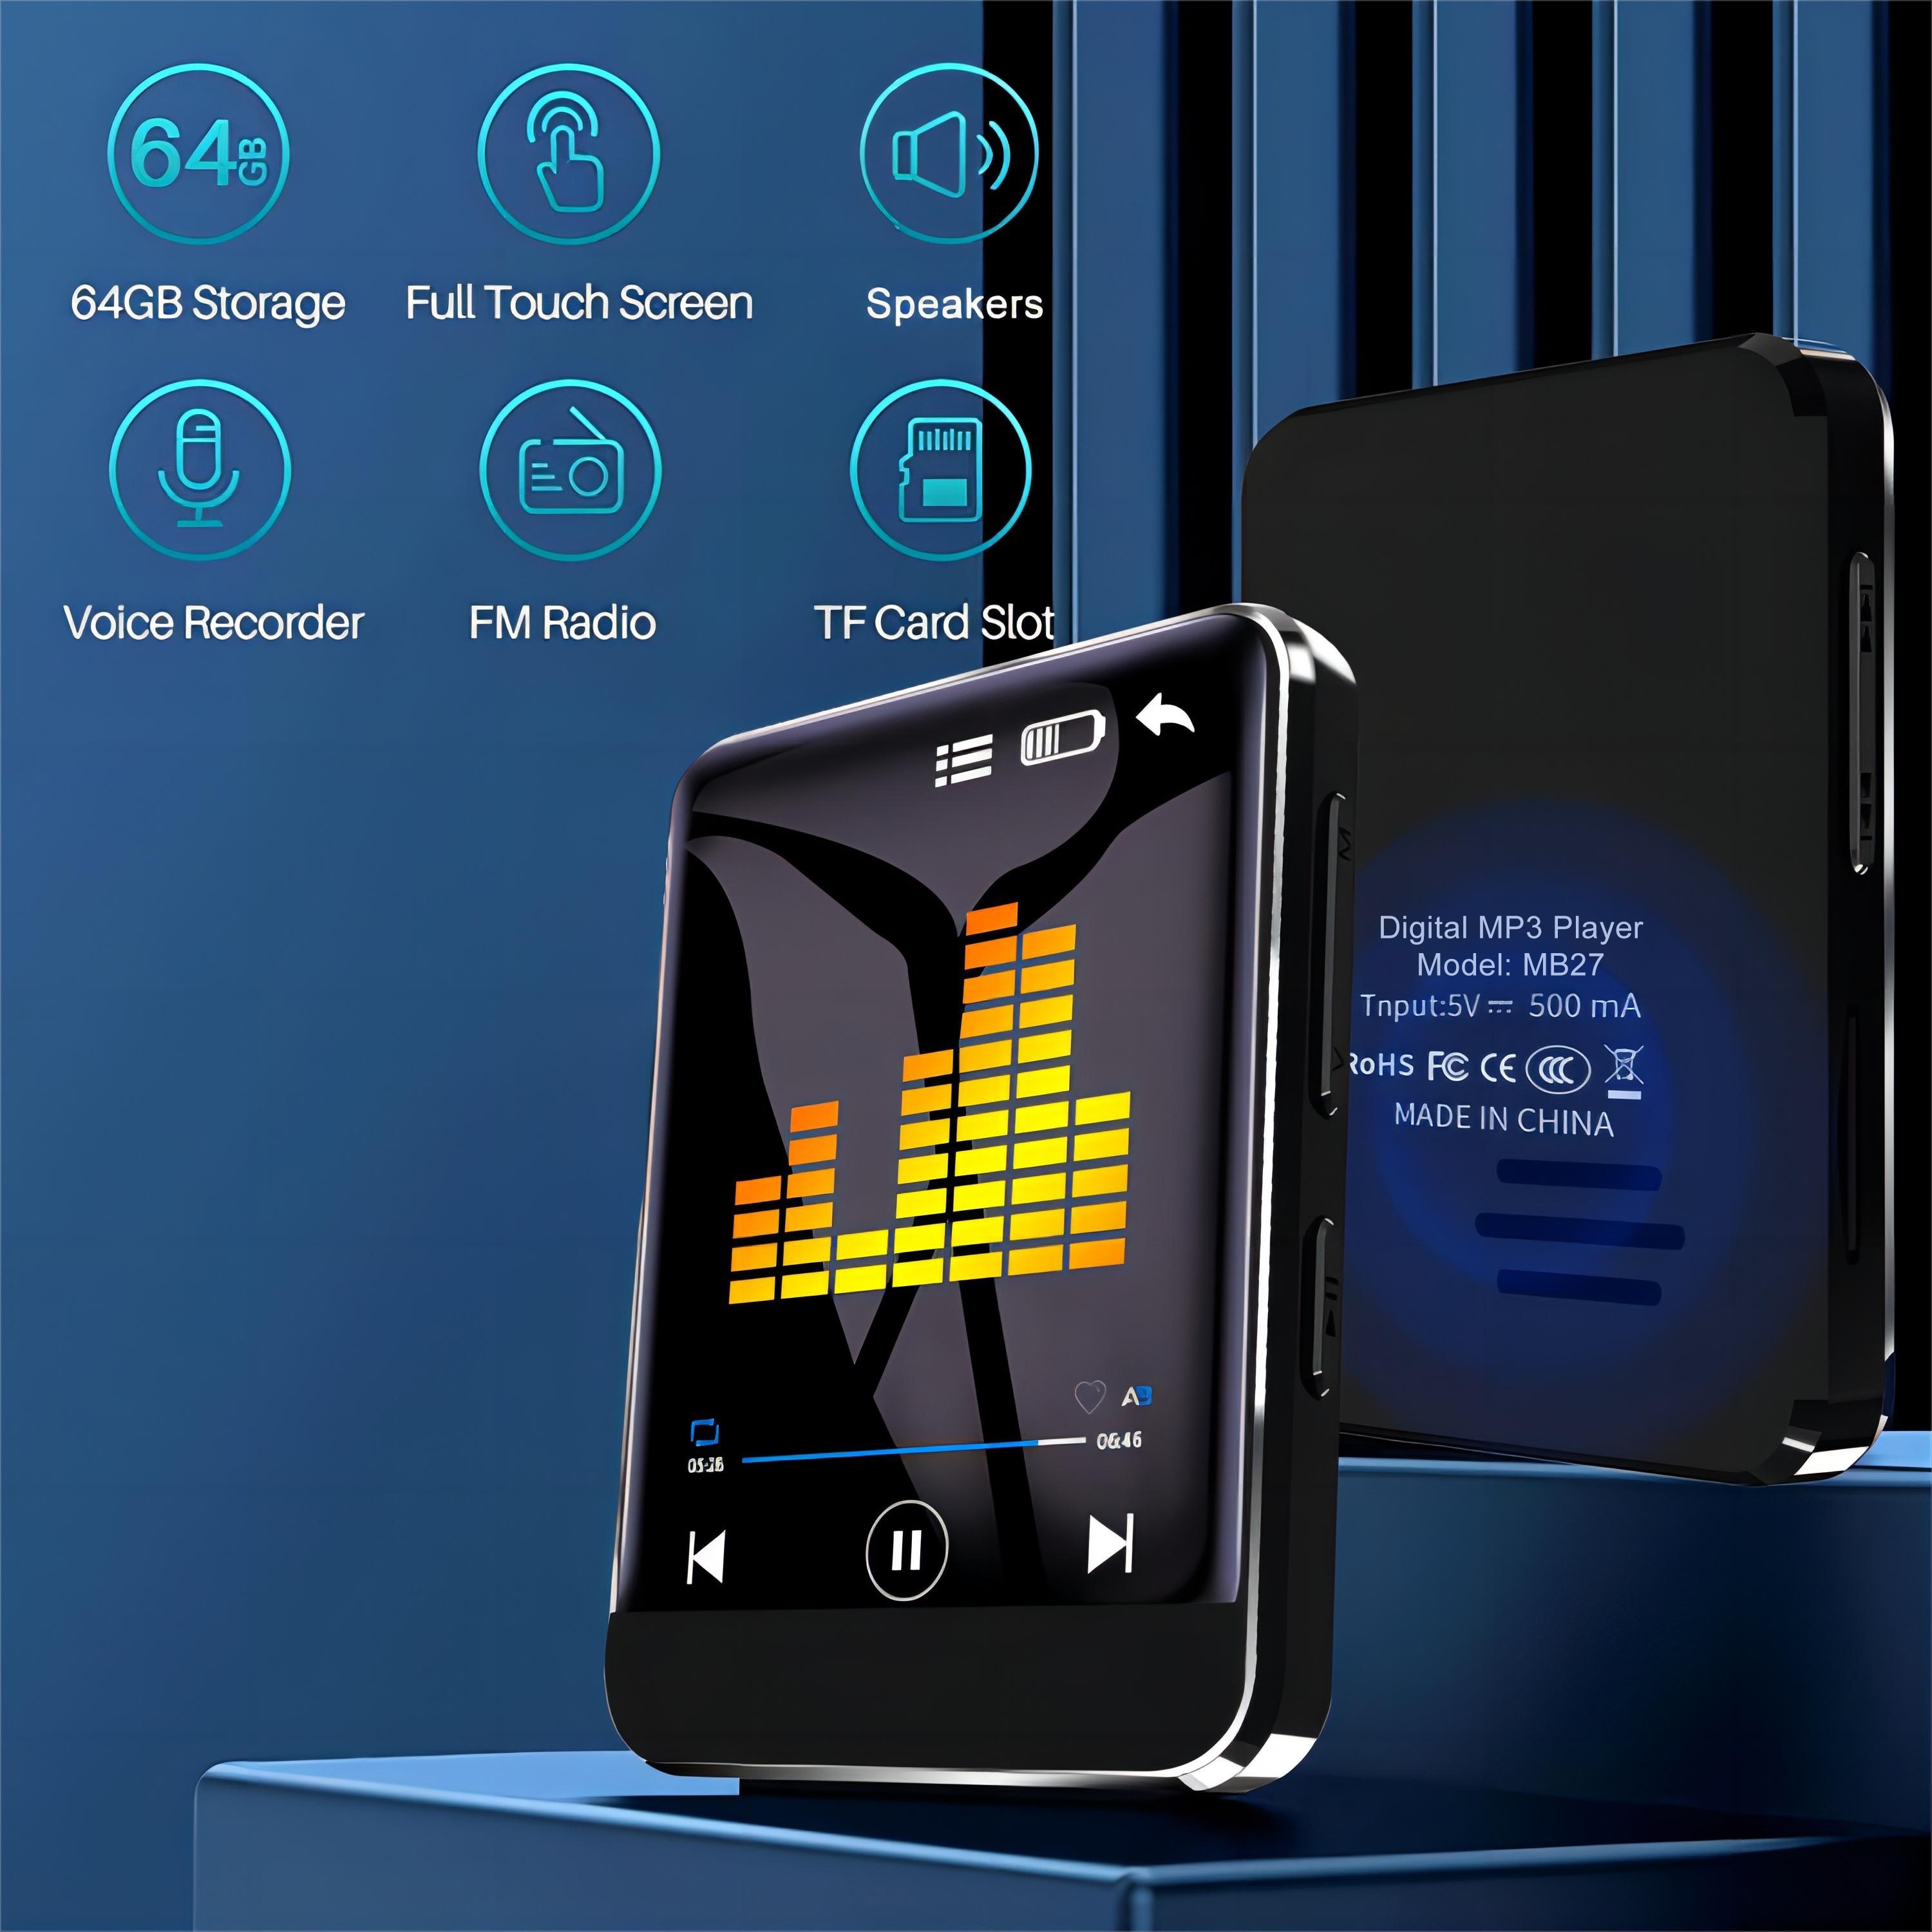 Compre Radio Portátil Tuning Digital Digital AM/FM Radio Radio Recargable  es Compatible Con el Puerto USB Tf, Temporizador de Sueño en China